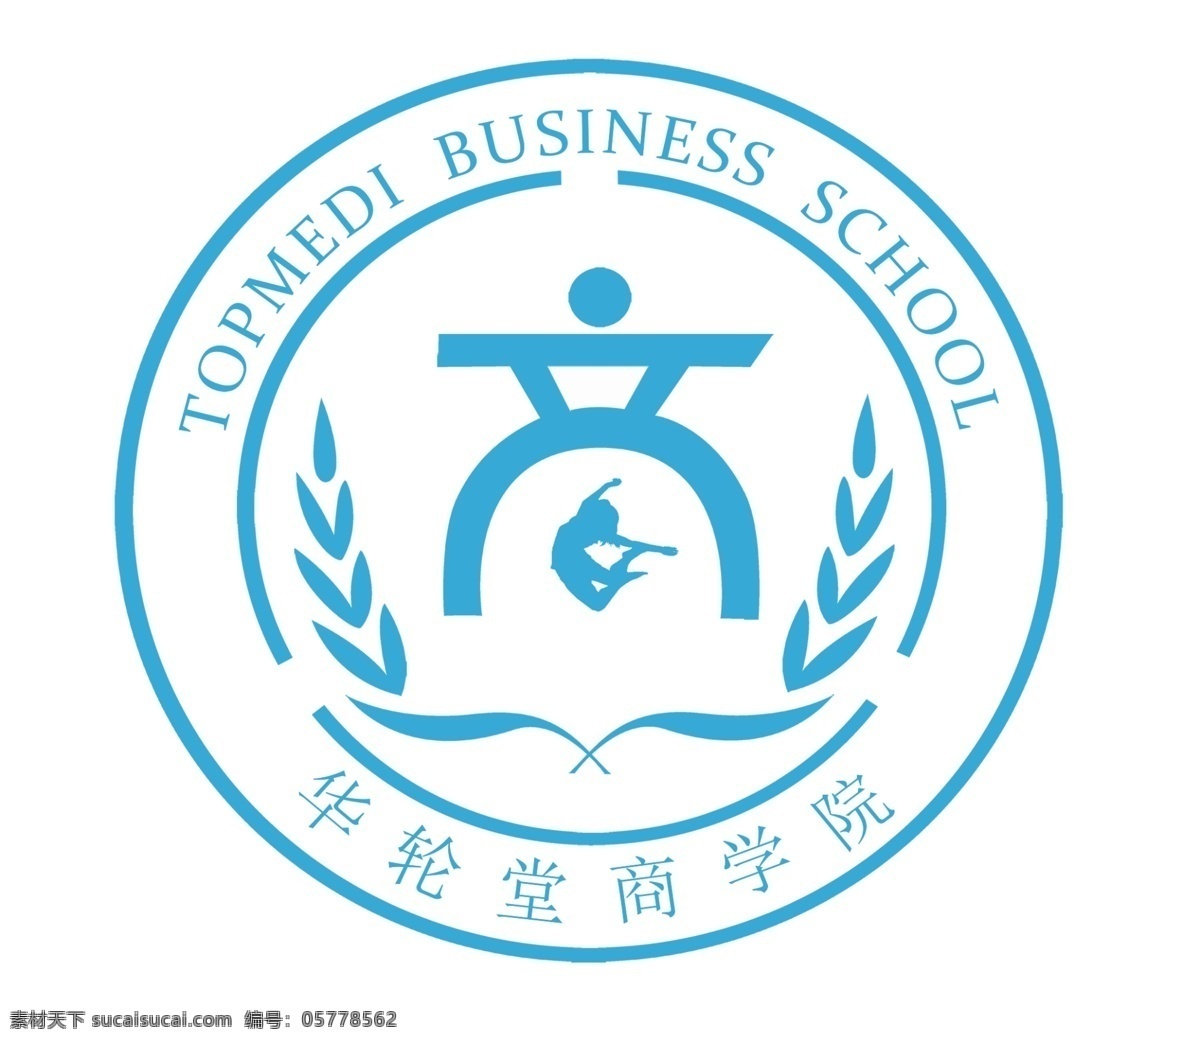 商学院 logo 公司